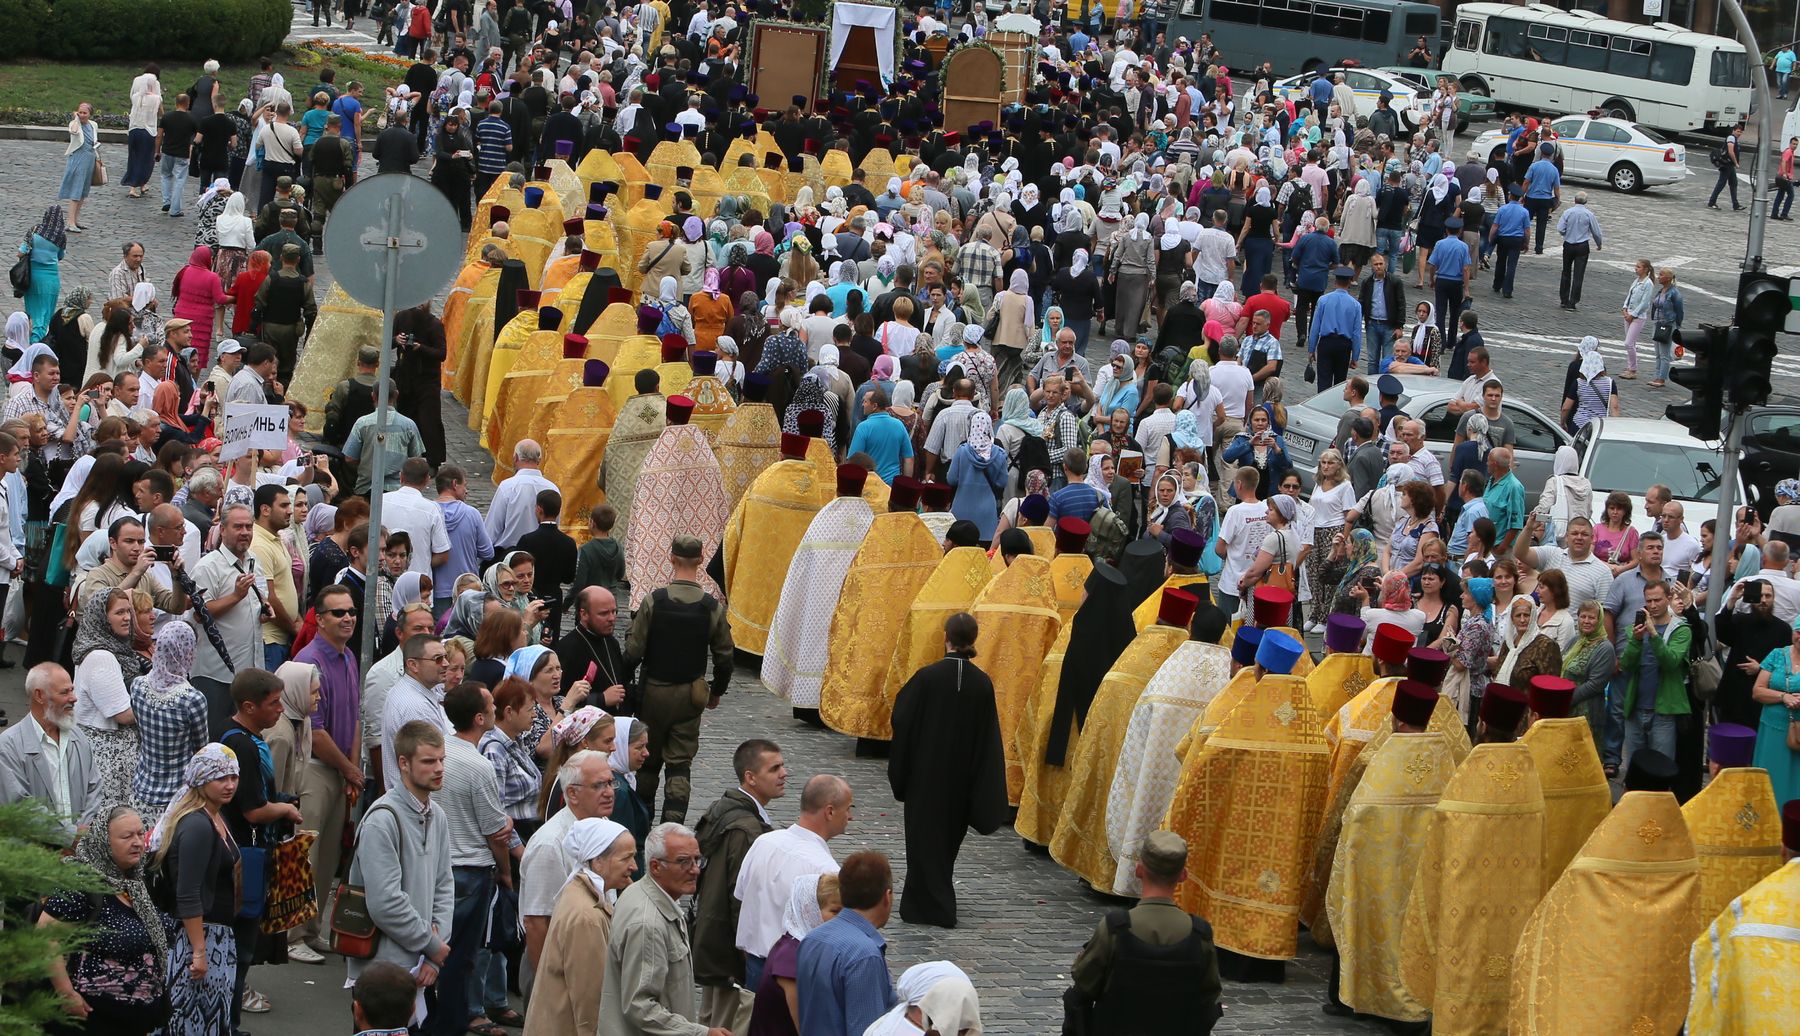 УПЦ проводит Крестный ход в Киеве